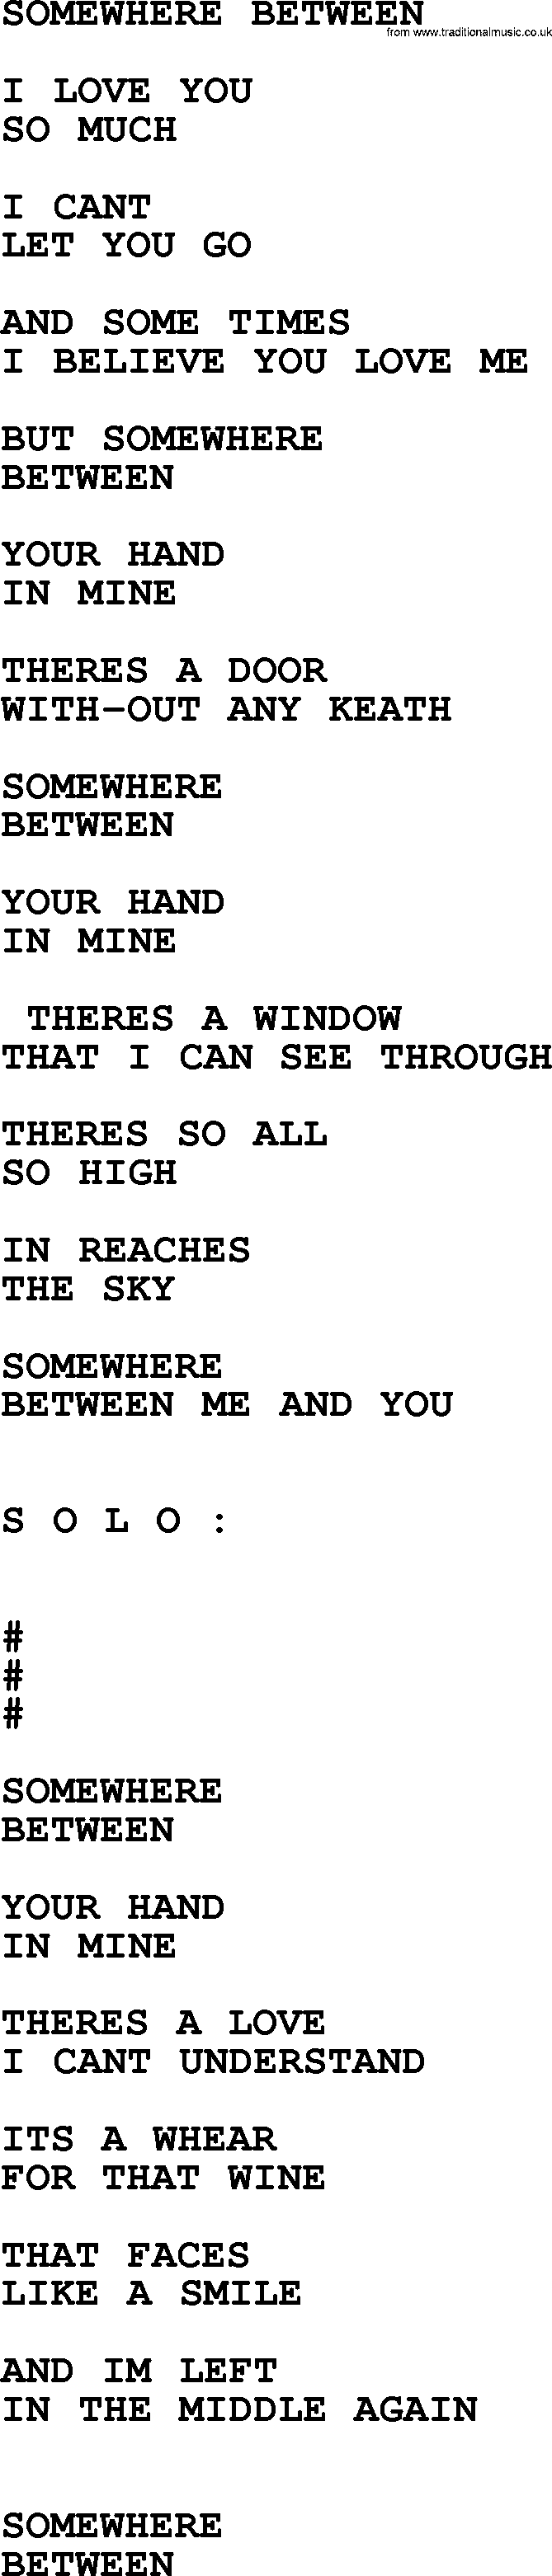 Merle Haggard song: Somewhere Between, lyrics.